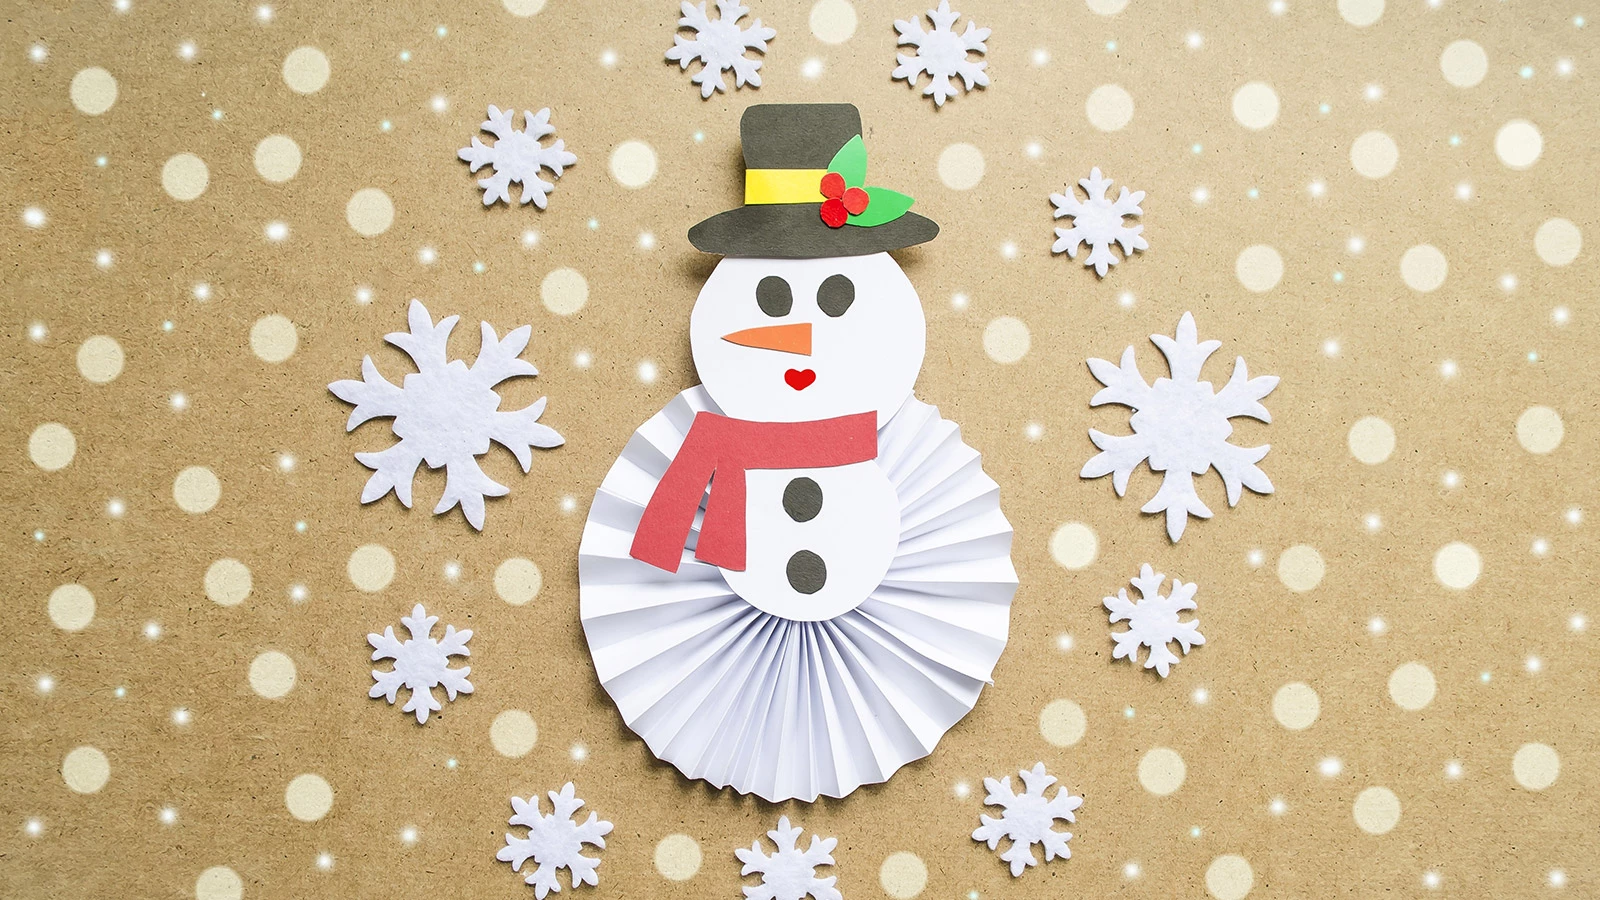 Веселый снеговик из картона своими руками. Новогодняя поделка в детский сад или школу.